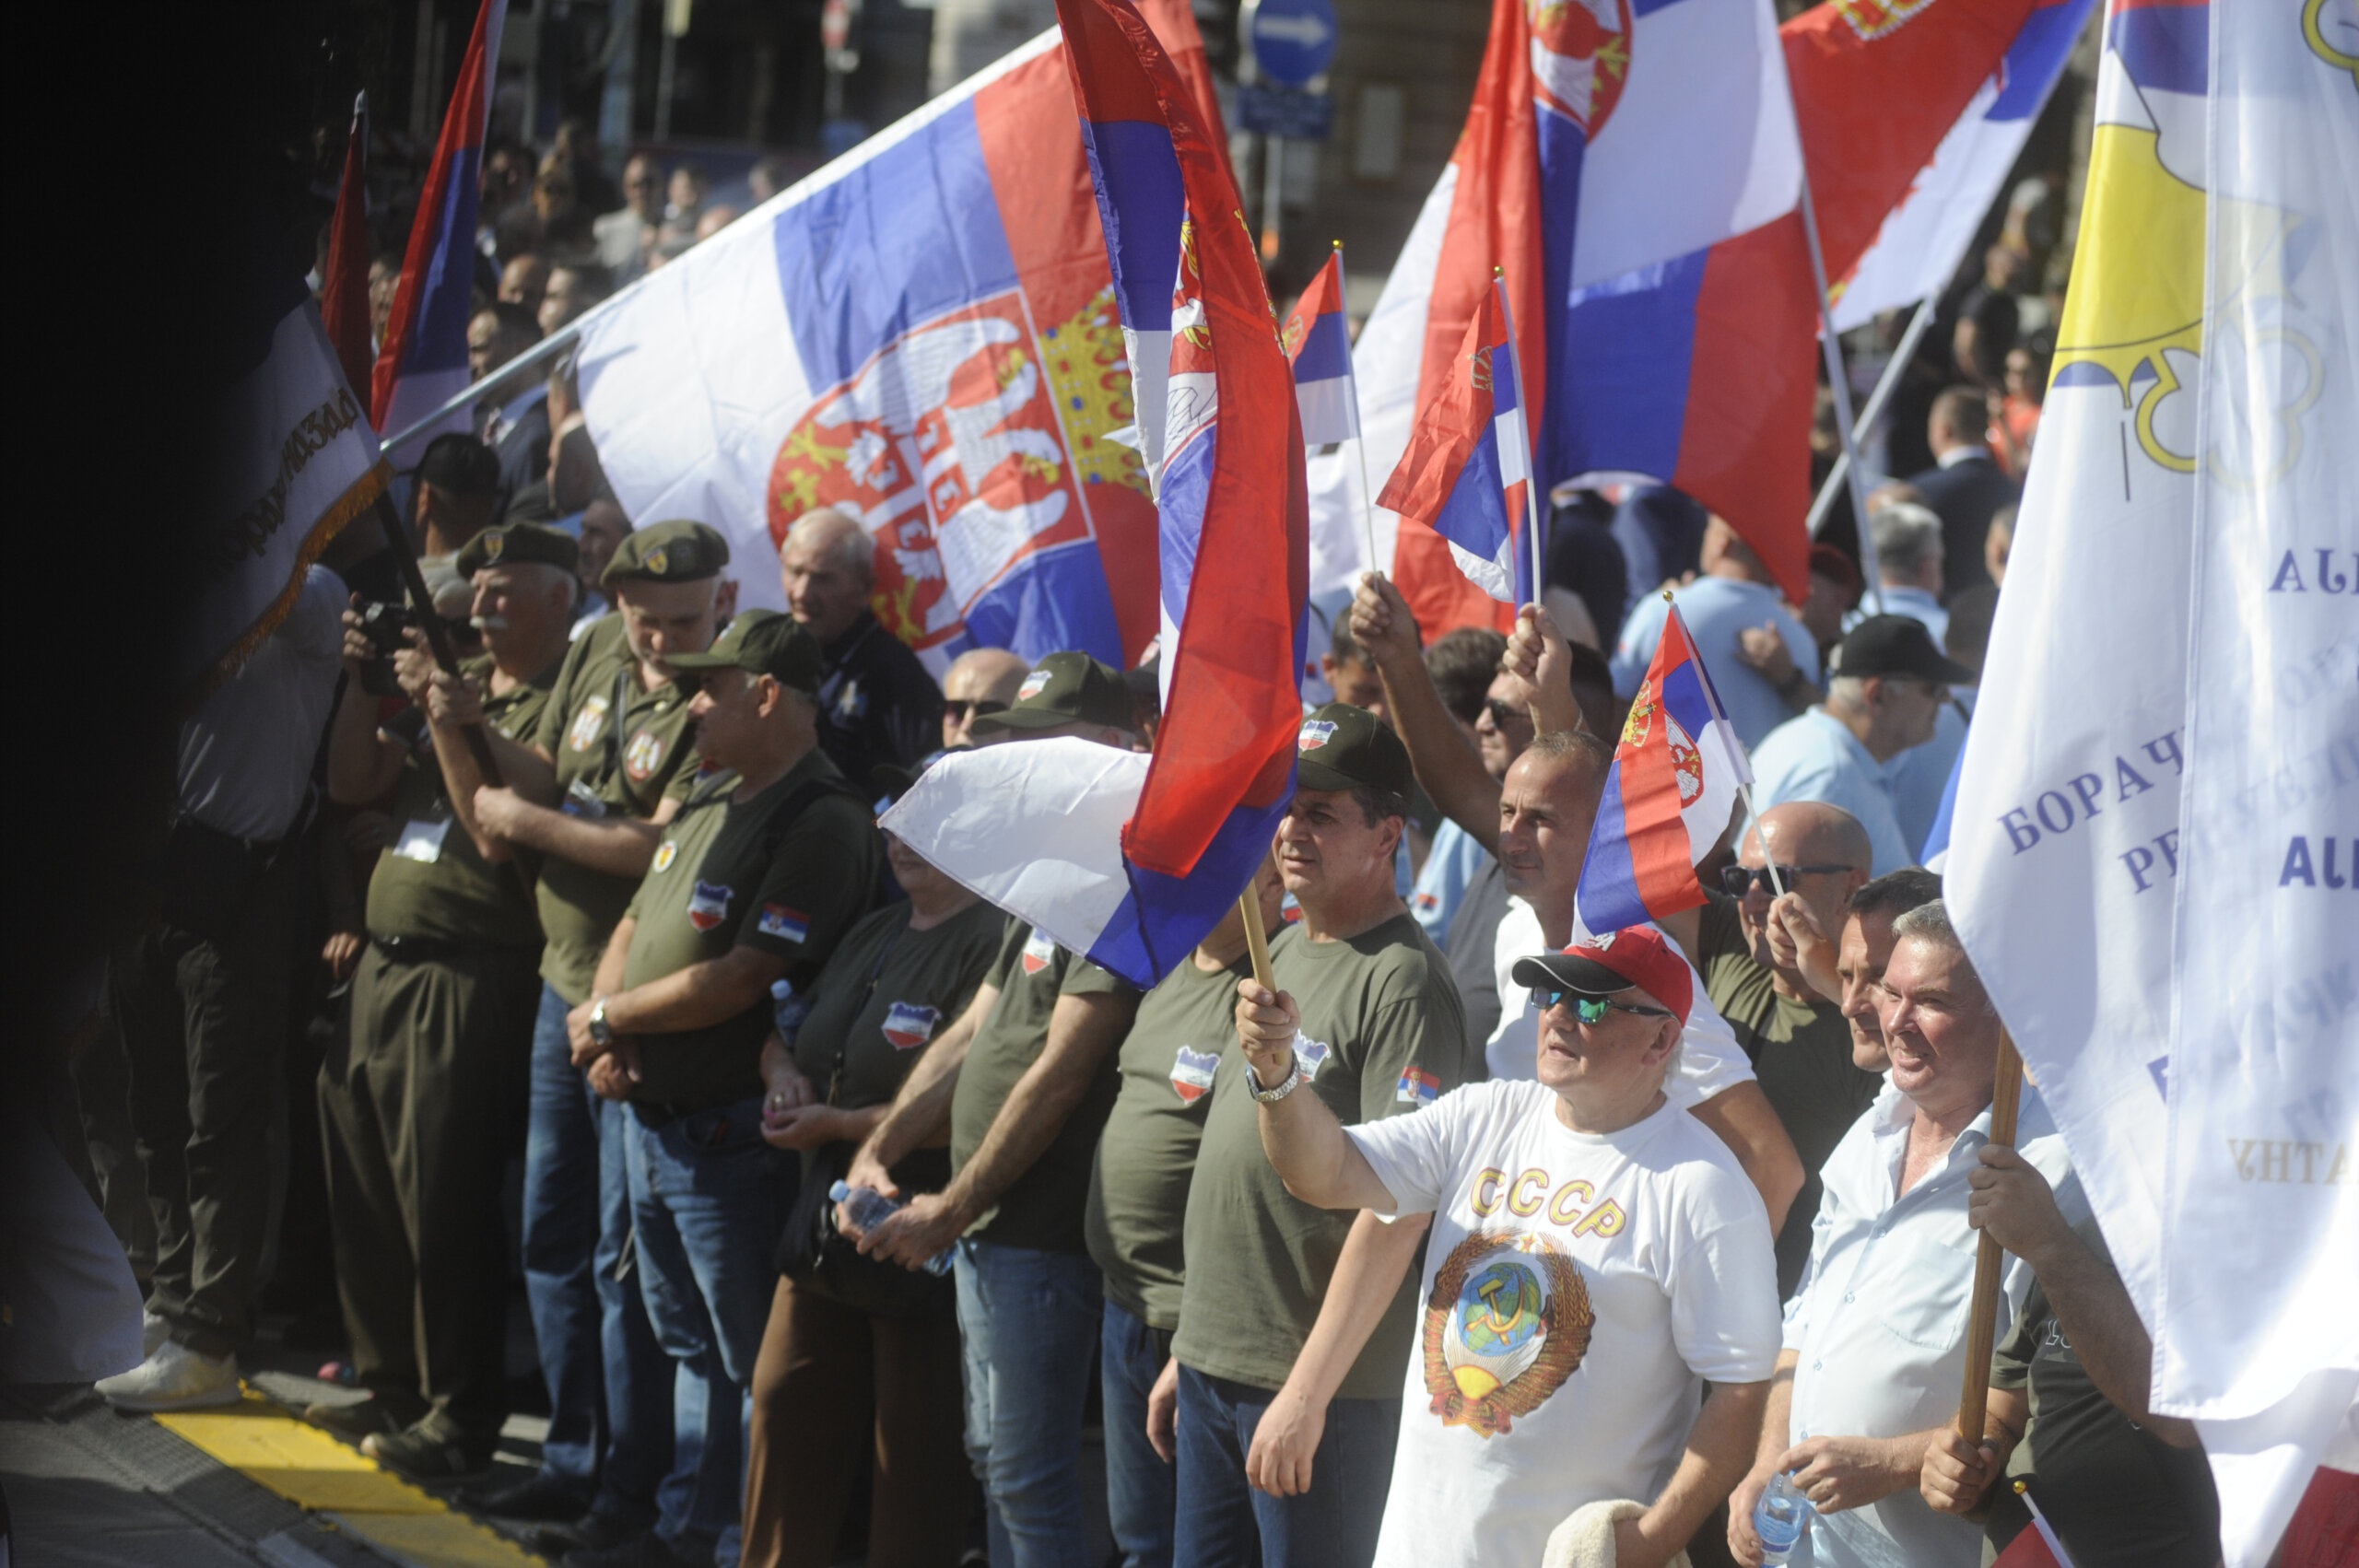 (FOTO) Kako je izgledala manifestacija "Jedan narod, jedan sabor - Srbija i Srpska" na Trgu republike u fotografijama? 14